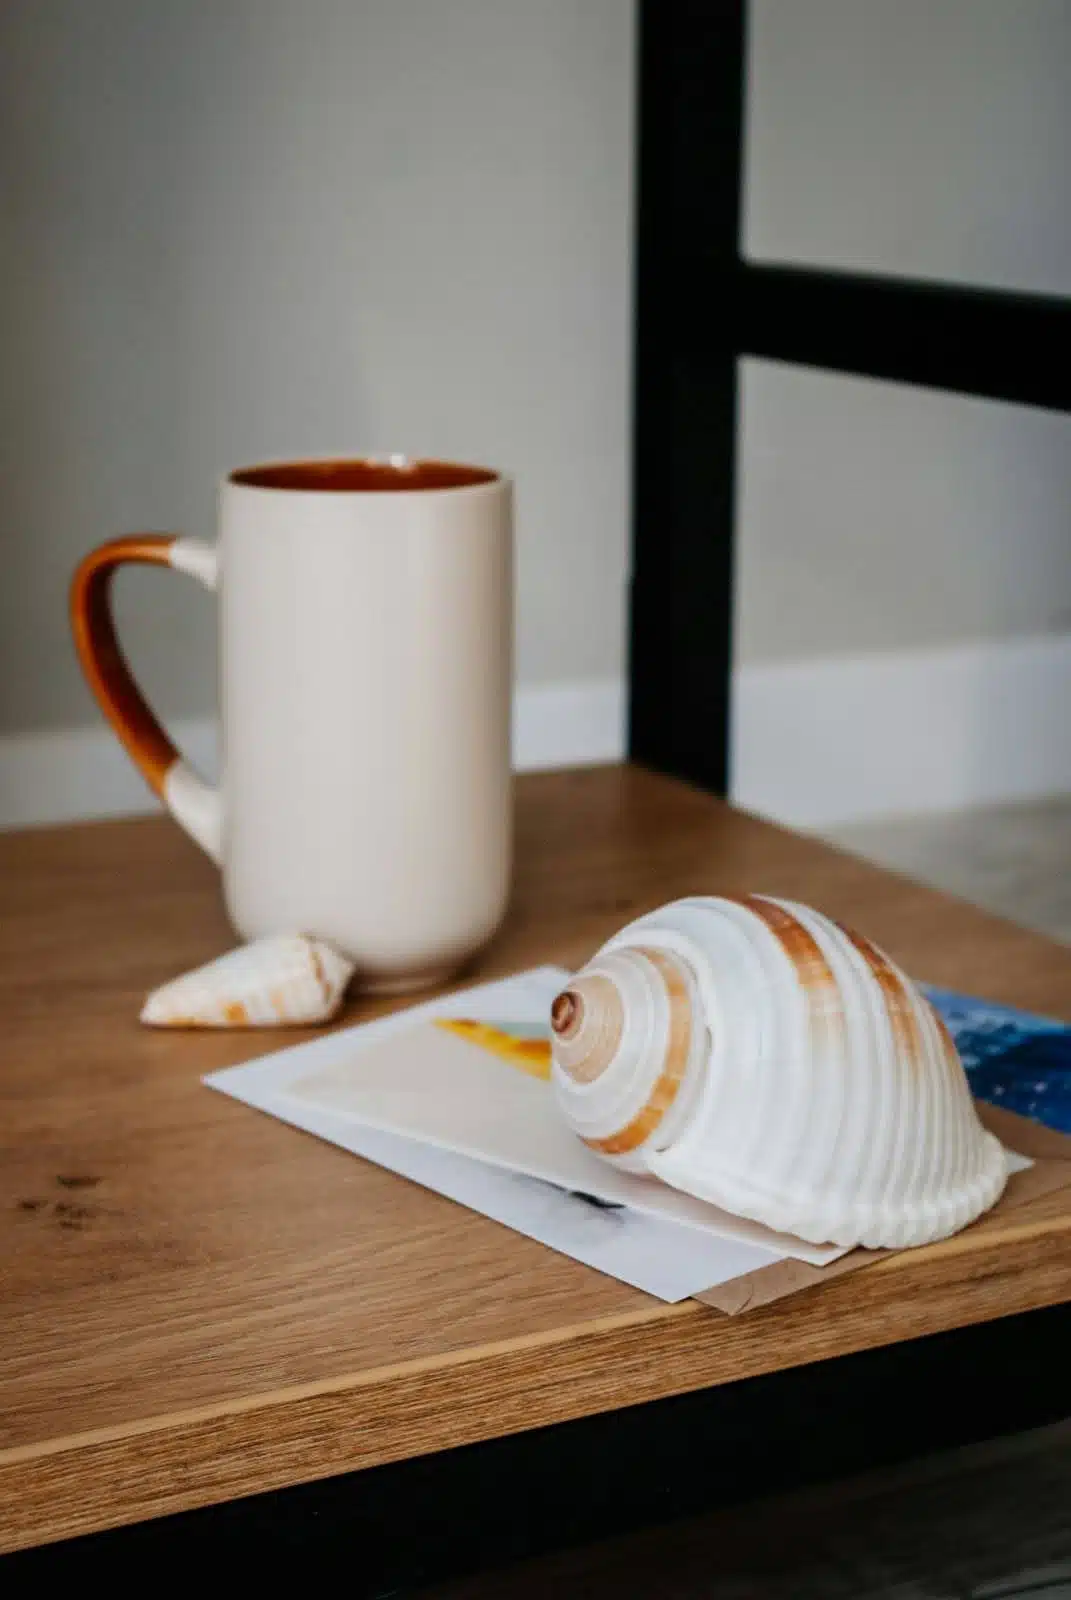 A table with seashells and a mug.